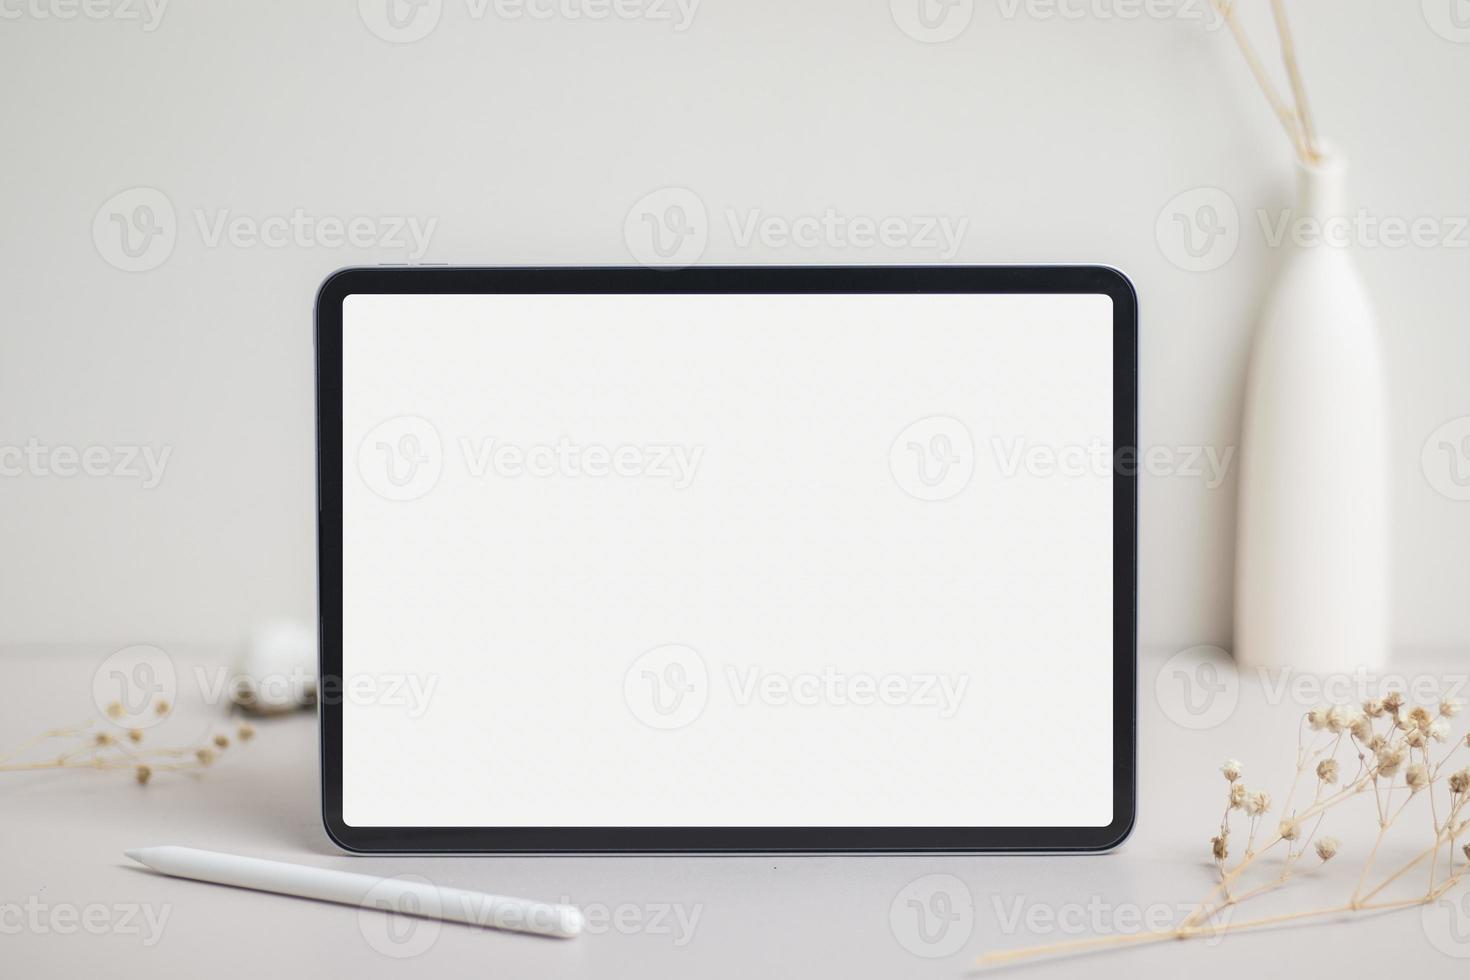 écran blanc vide de tablette avec maquette de crayon. fleur de coton et feuilles sèches sur maquette de fond beige pour la conception photo